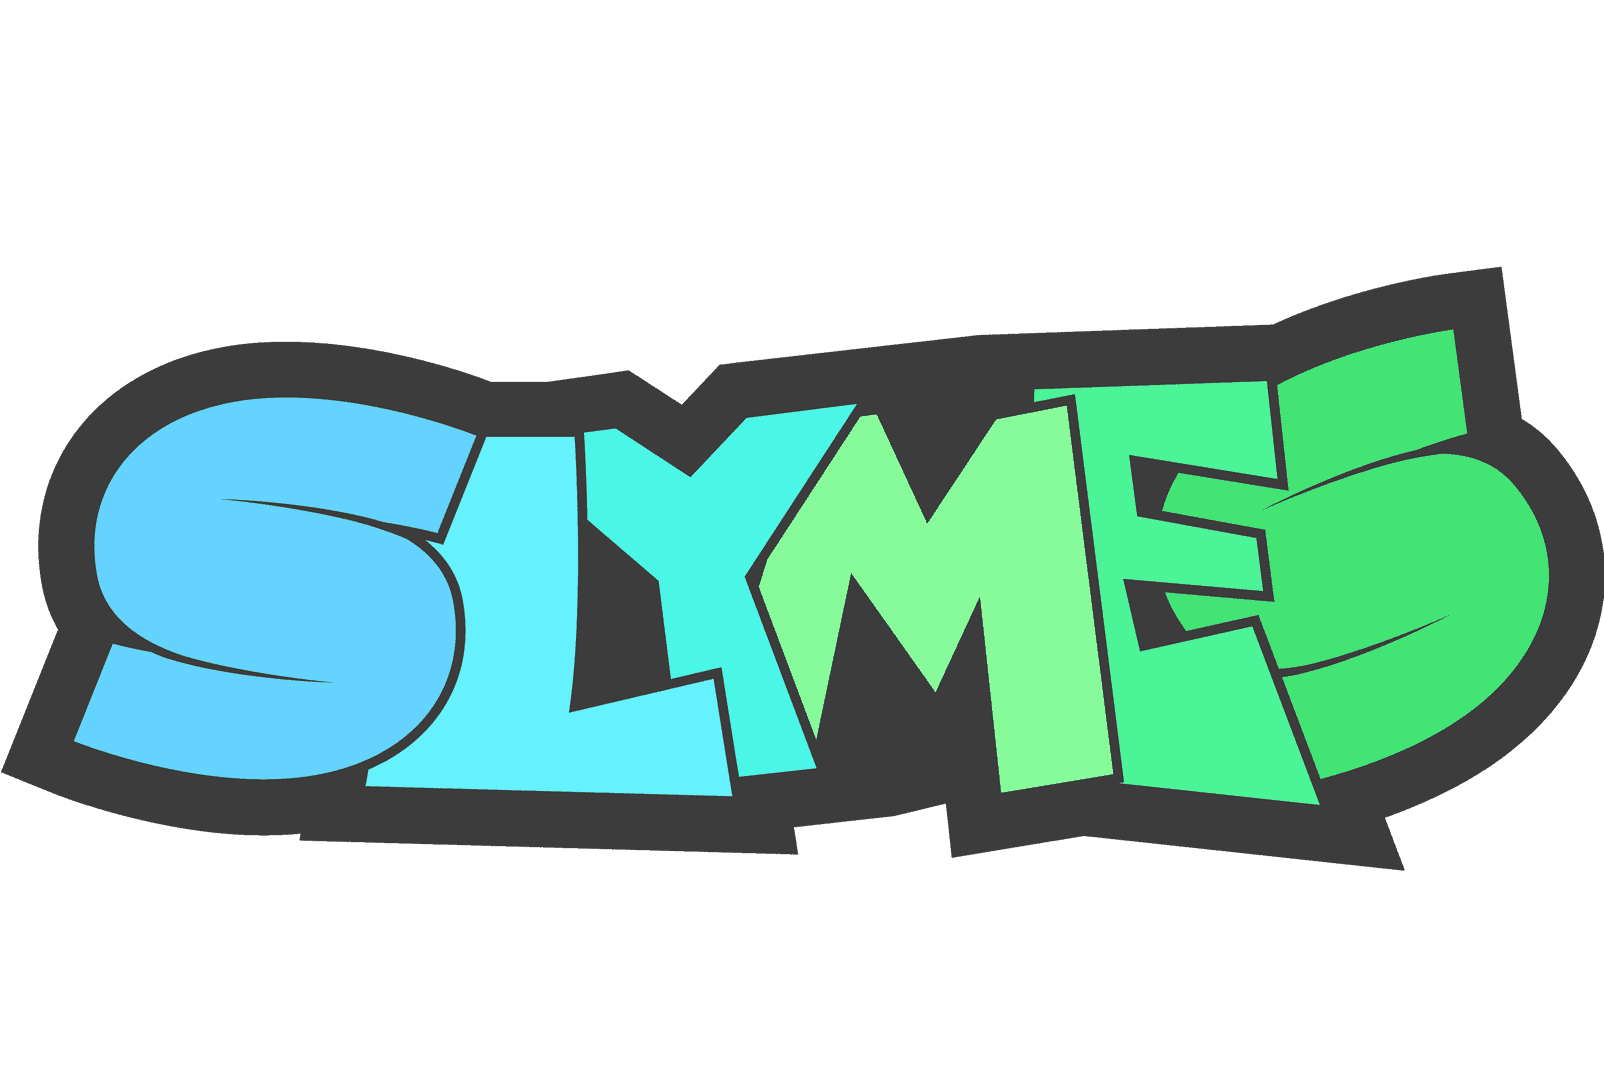 Slymes